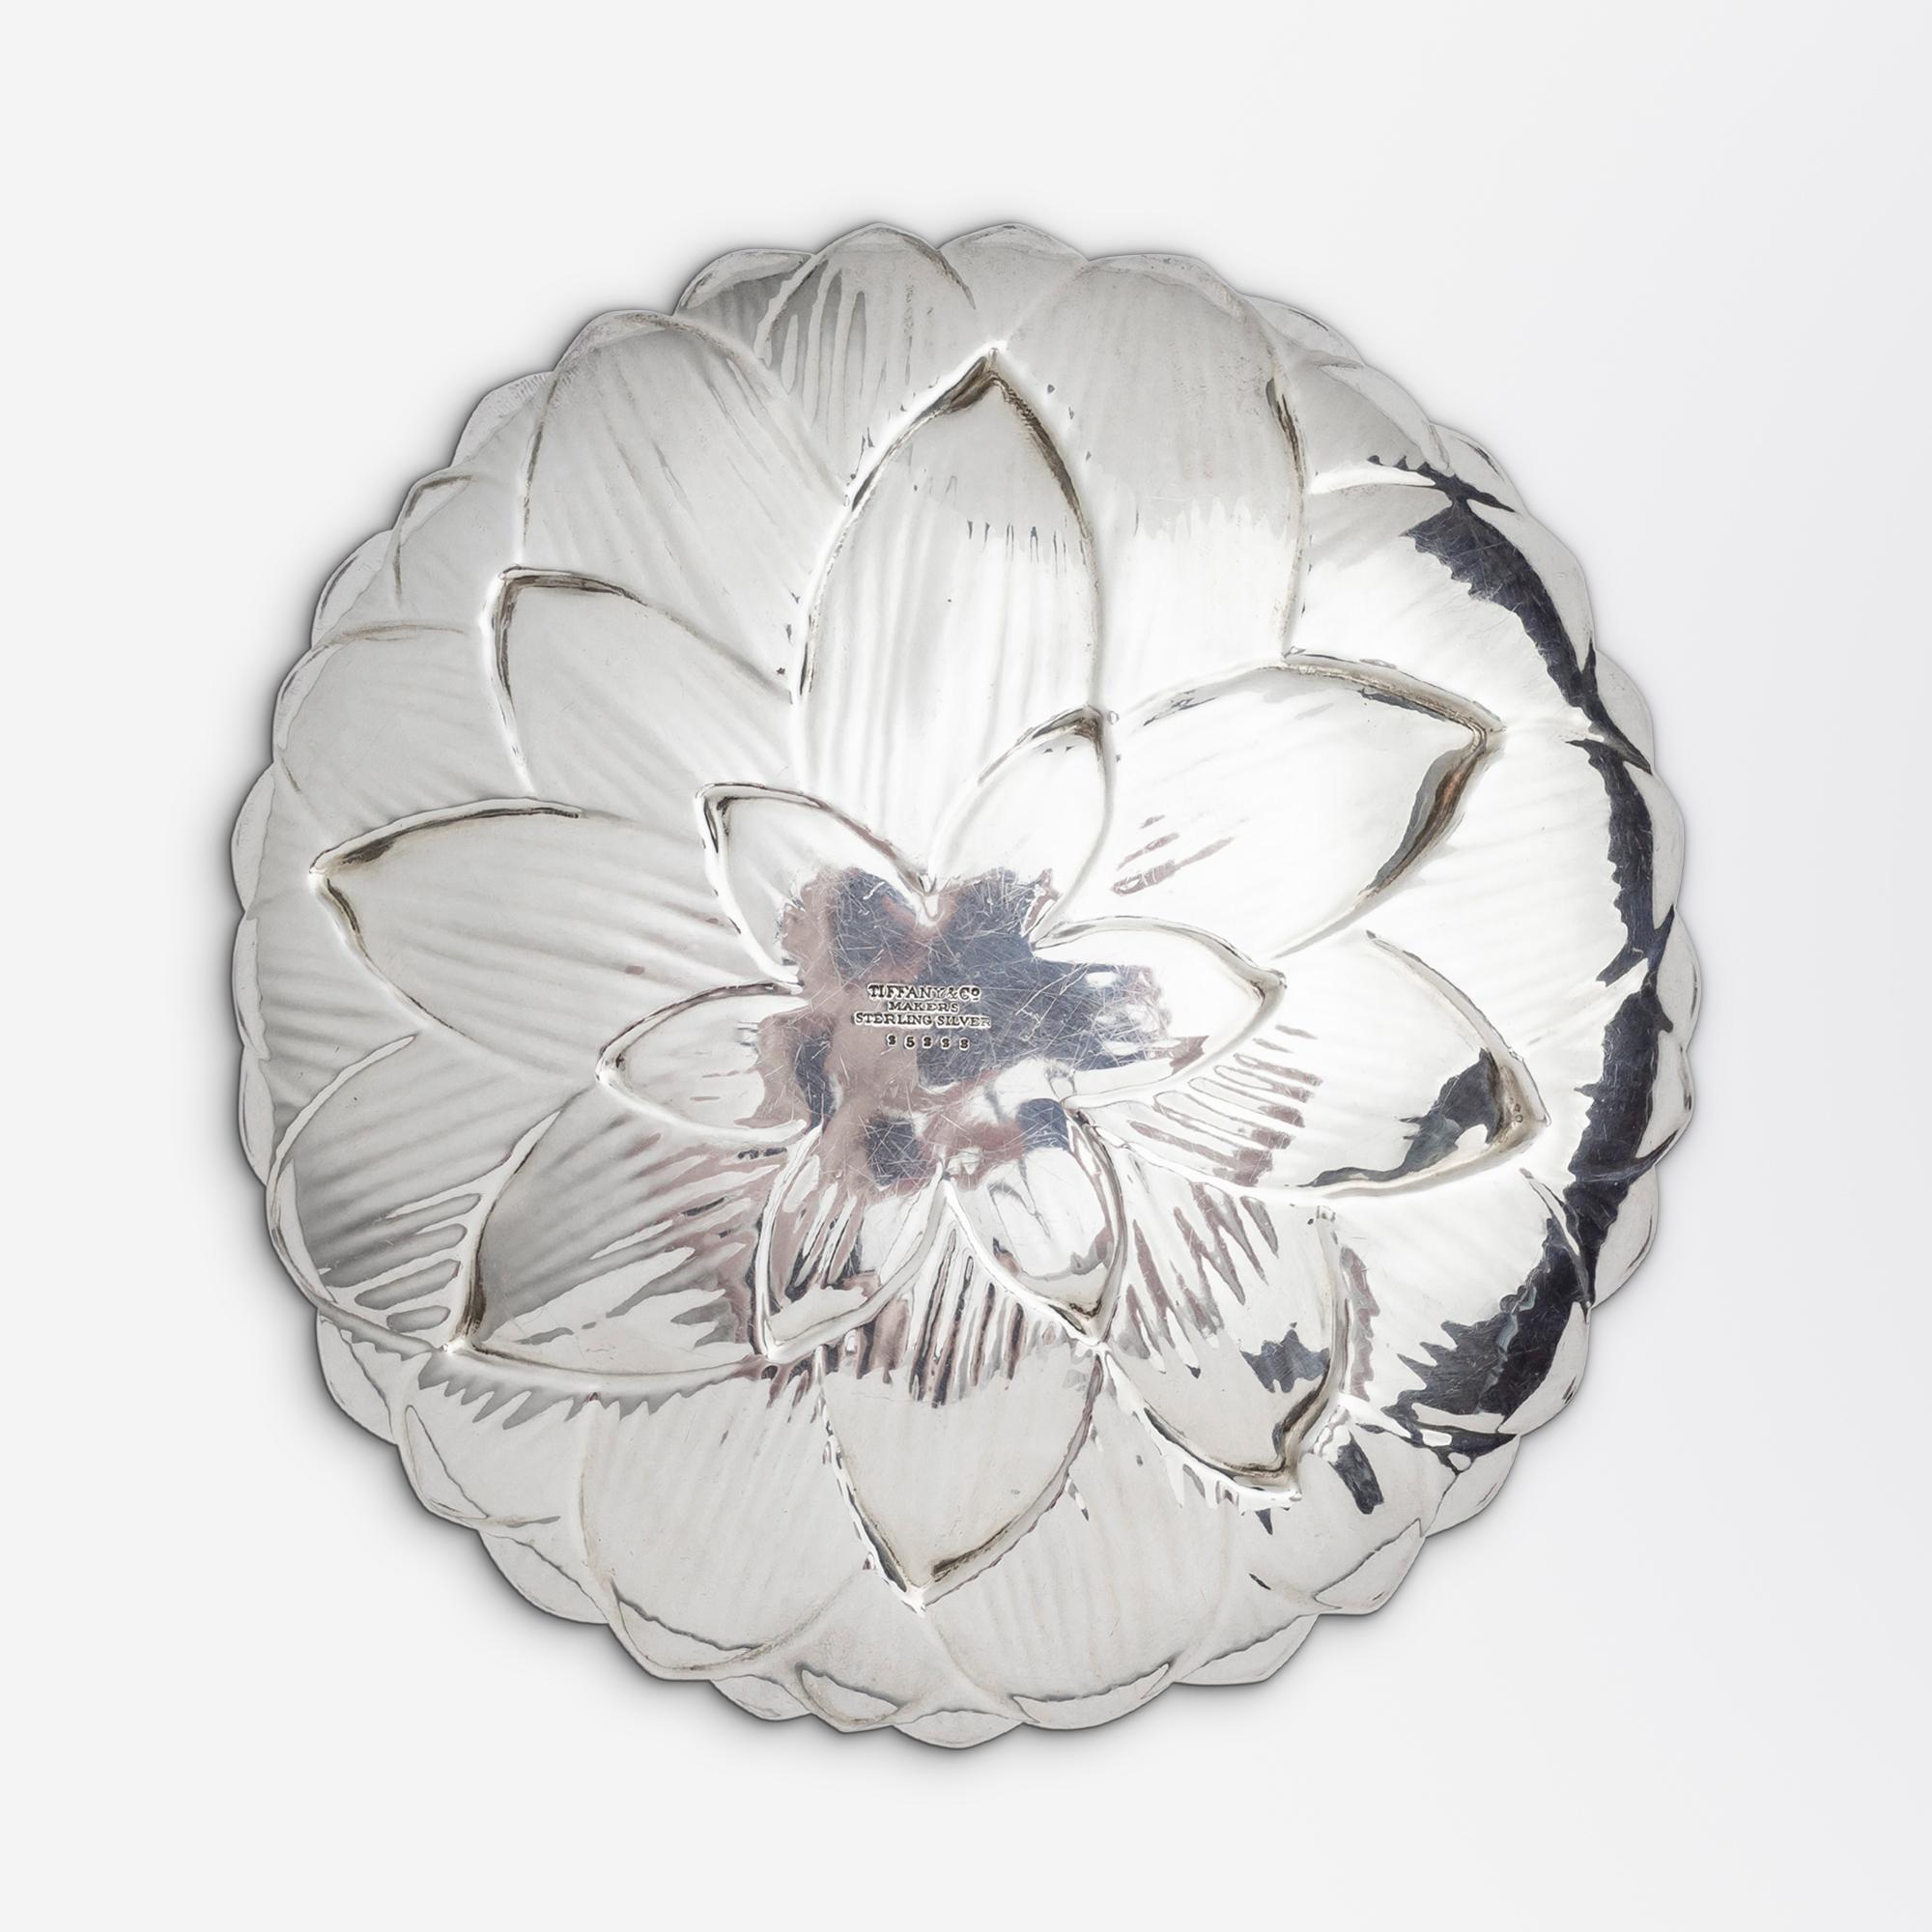 Eine Schale aus Sterlingsilber in Form einer Lotusblüte oder einer Seerose des angesehenen Herstellers Tiffany & Co. Die runde Schale ist nach 1965 von der Firma gestempelt und trägt die Musternummer 